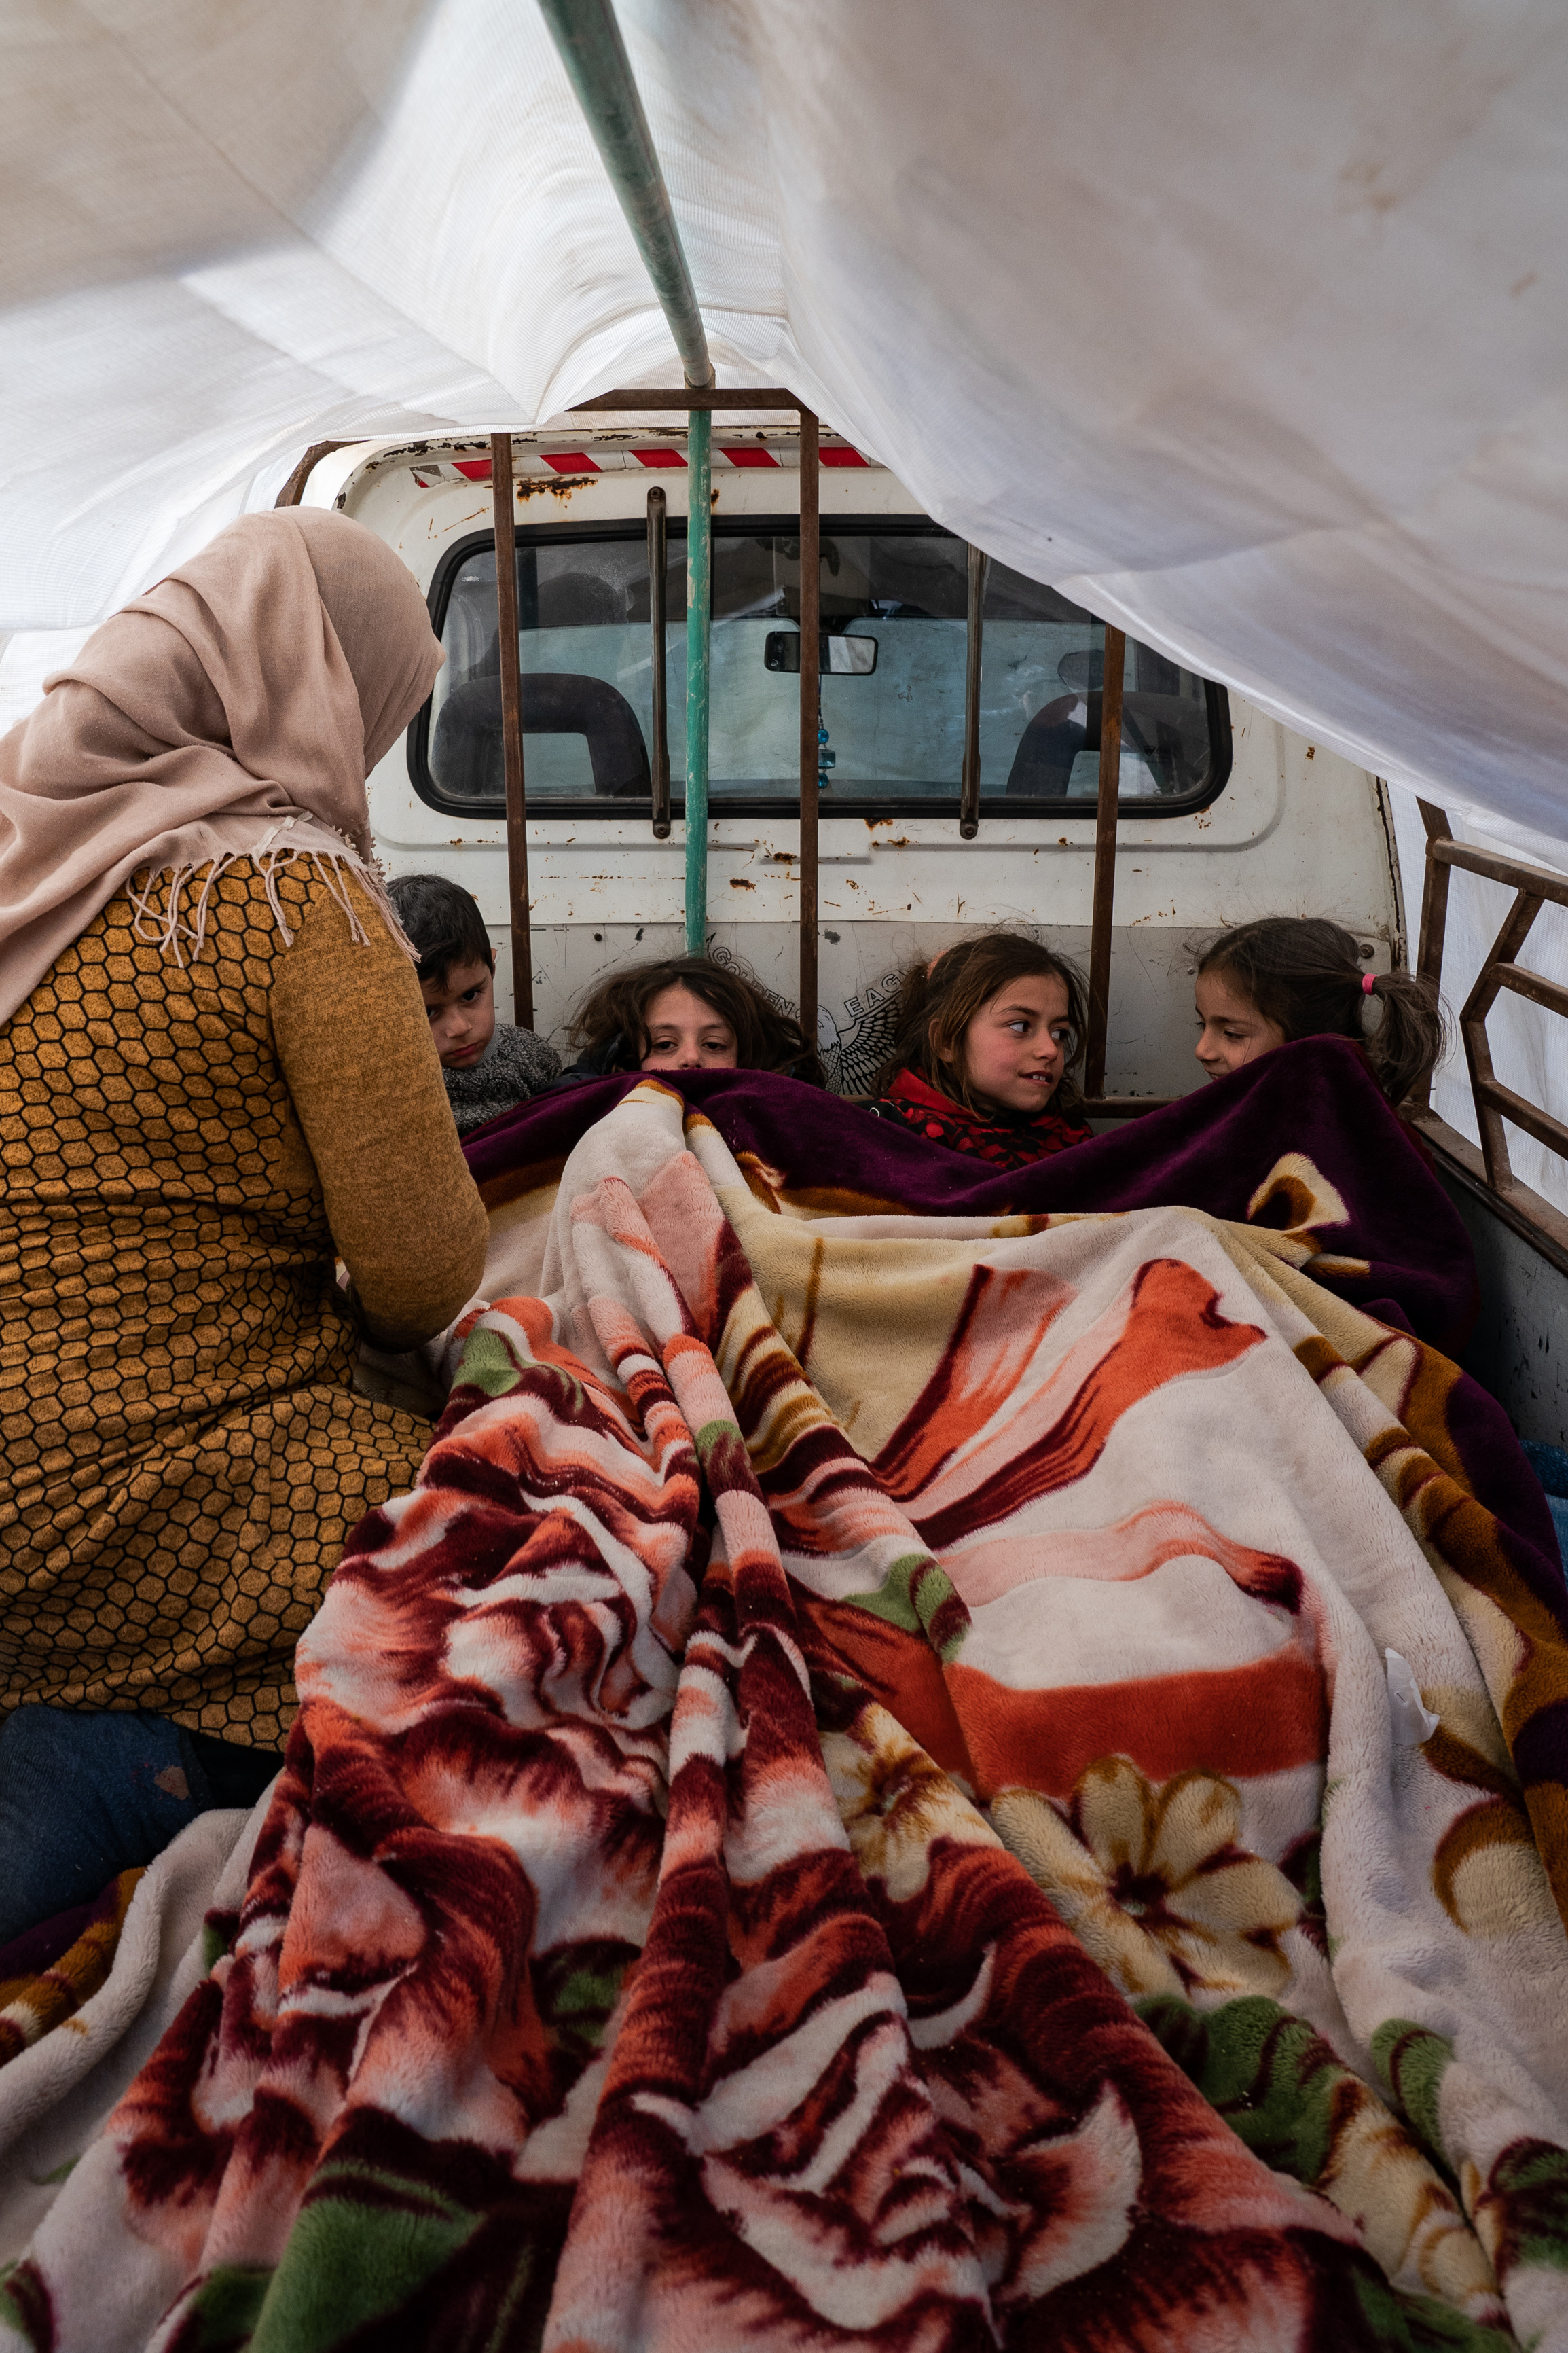 'Eu só quero minha mãe': Síria e Turquia lutam para cuidar de órfãos